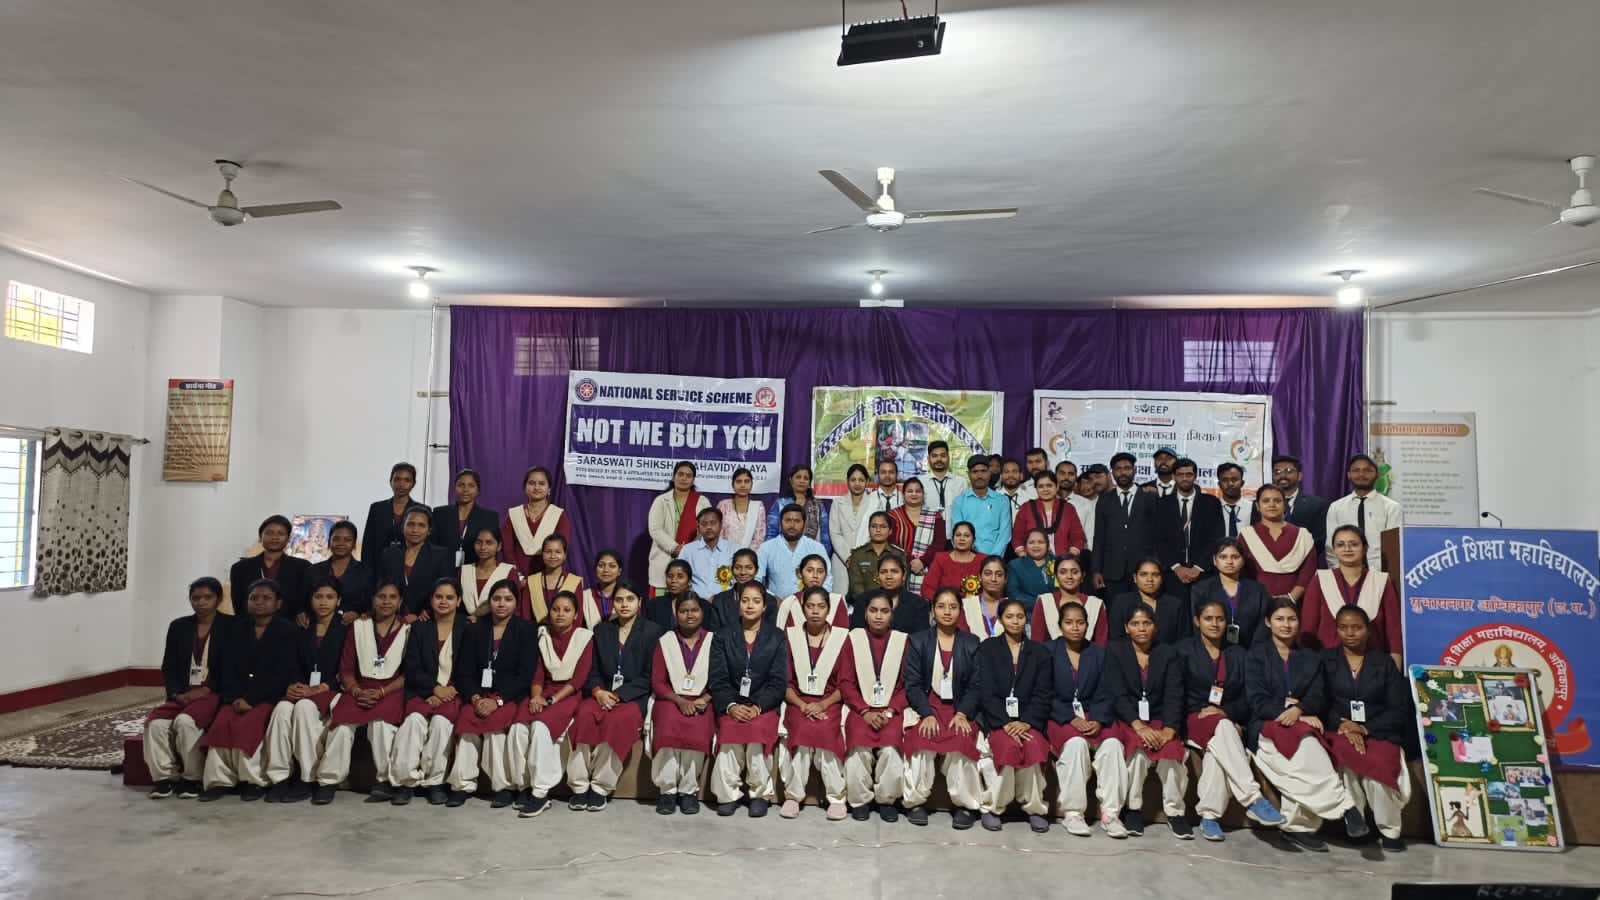 सरस्वती शिक्षा महाविद्यालय सुभाष नगर अंबिकापुर सरगुजा छत्तीसगढ़ में अंतरराष्ट्रीय महिला दिवस कार्यक्रम का आयोजन किया गया ।